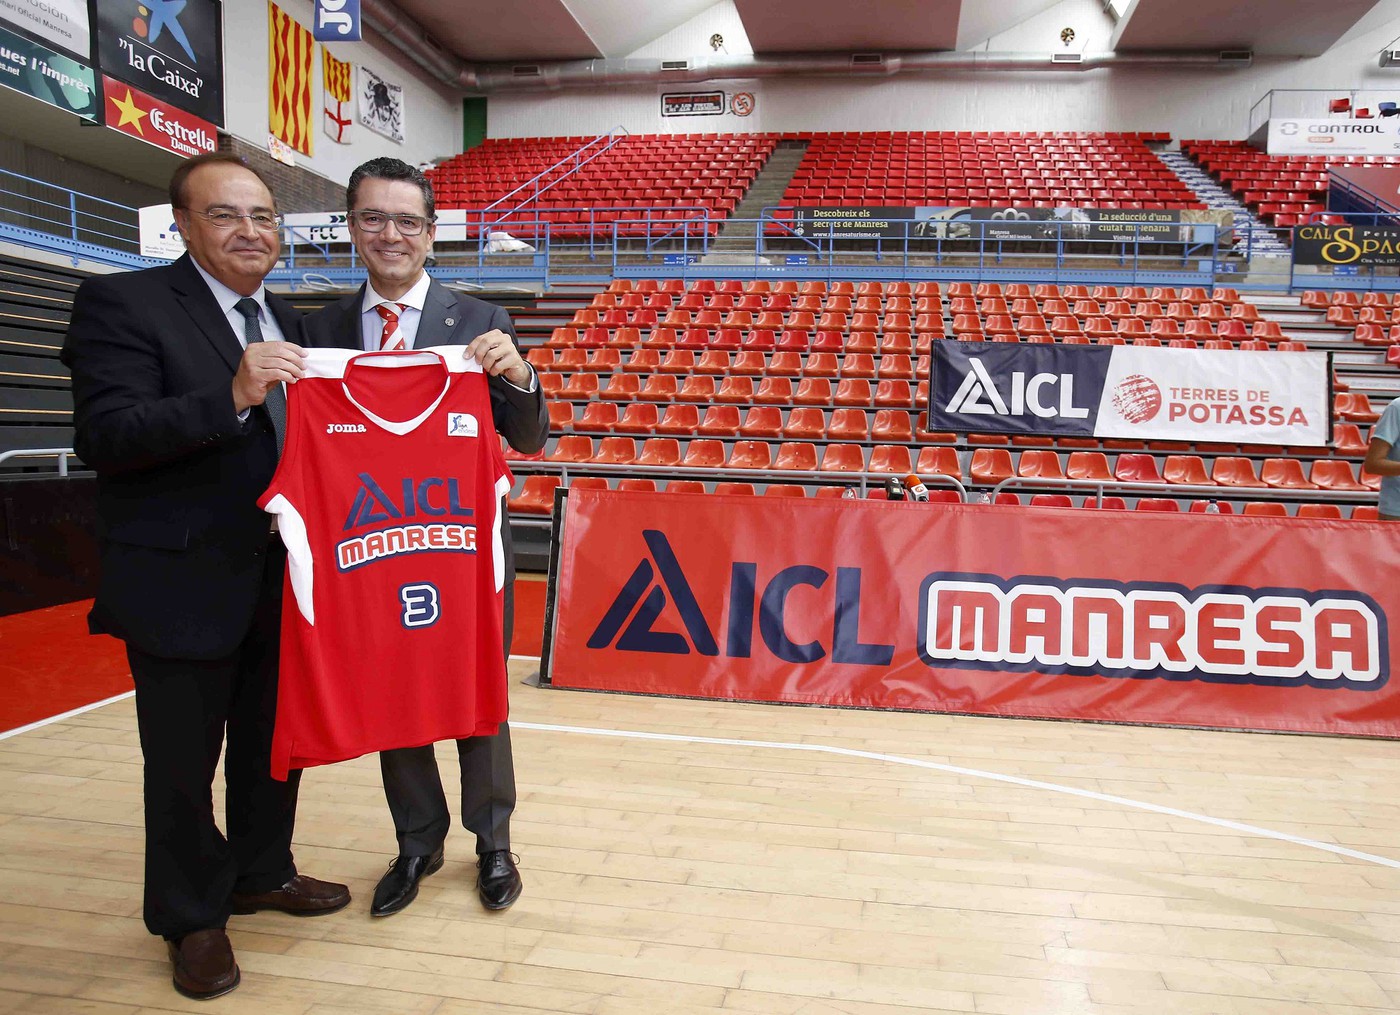 Presentat oficialment ICL com a patrocinador del Bàsquet Manresa